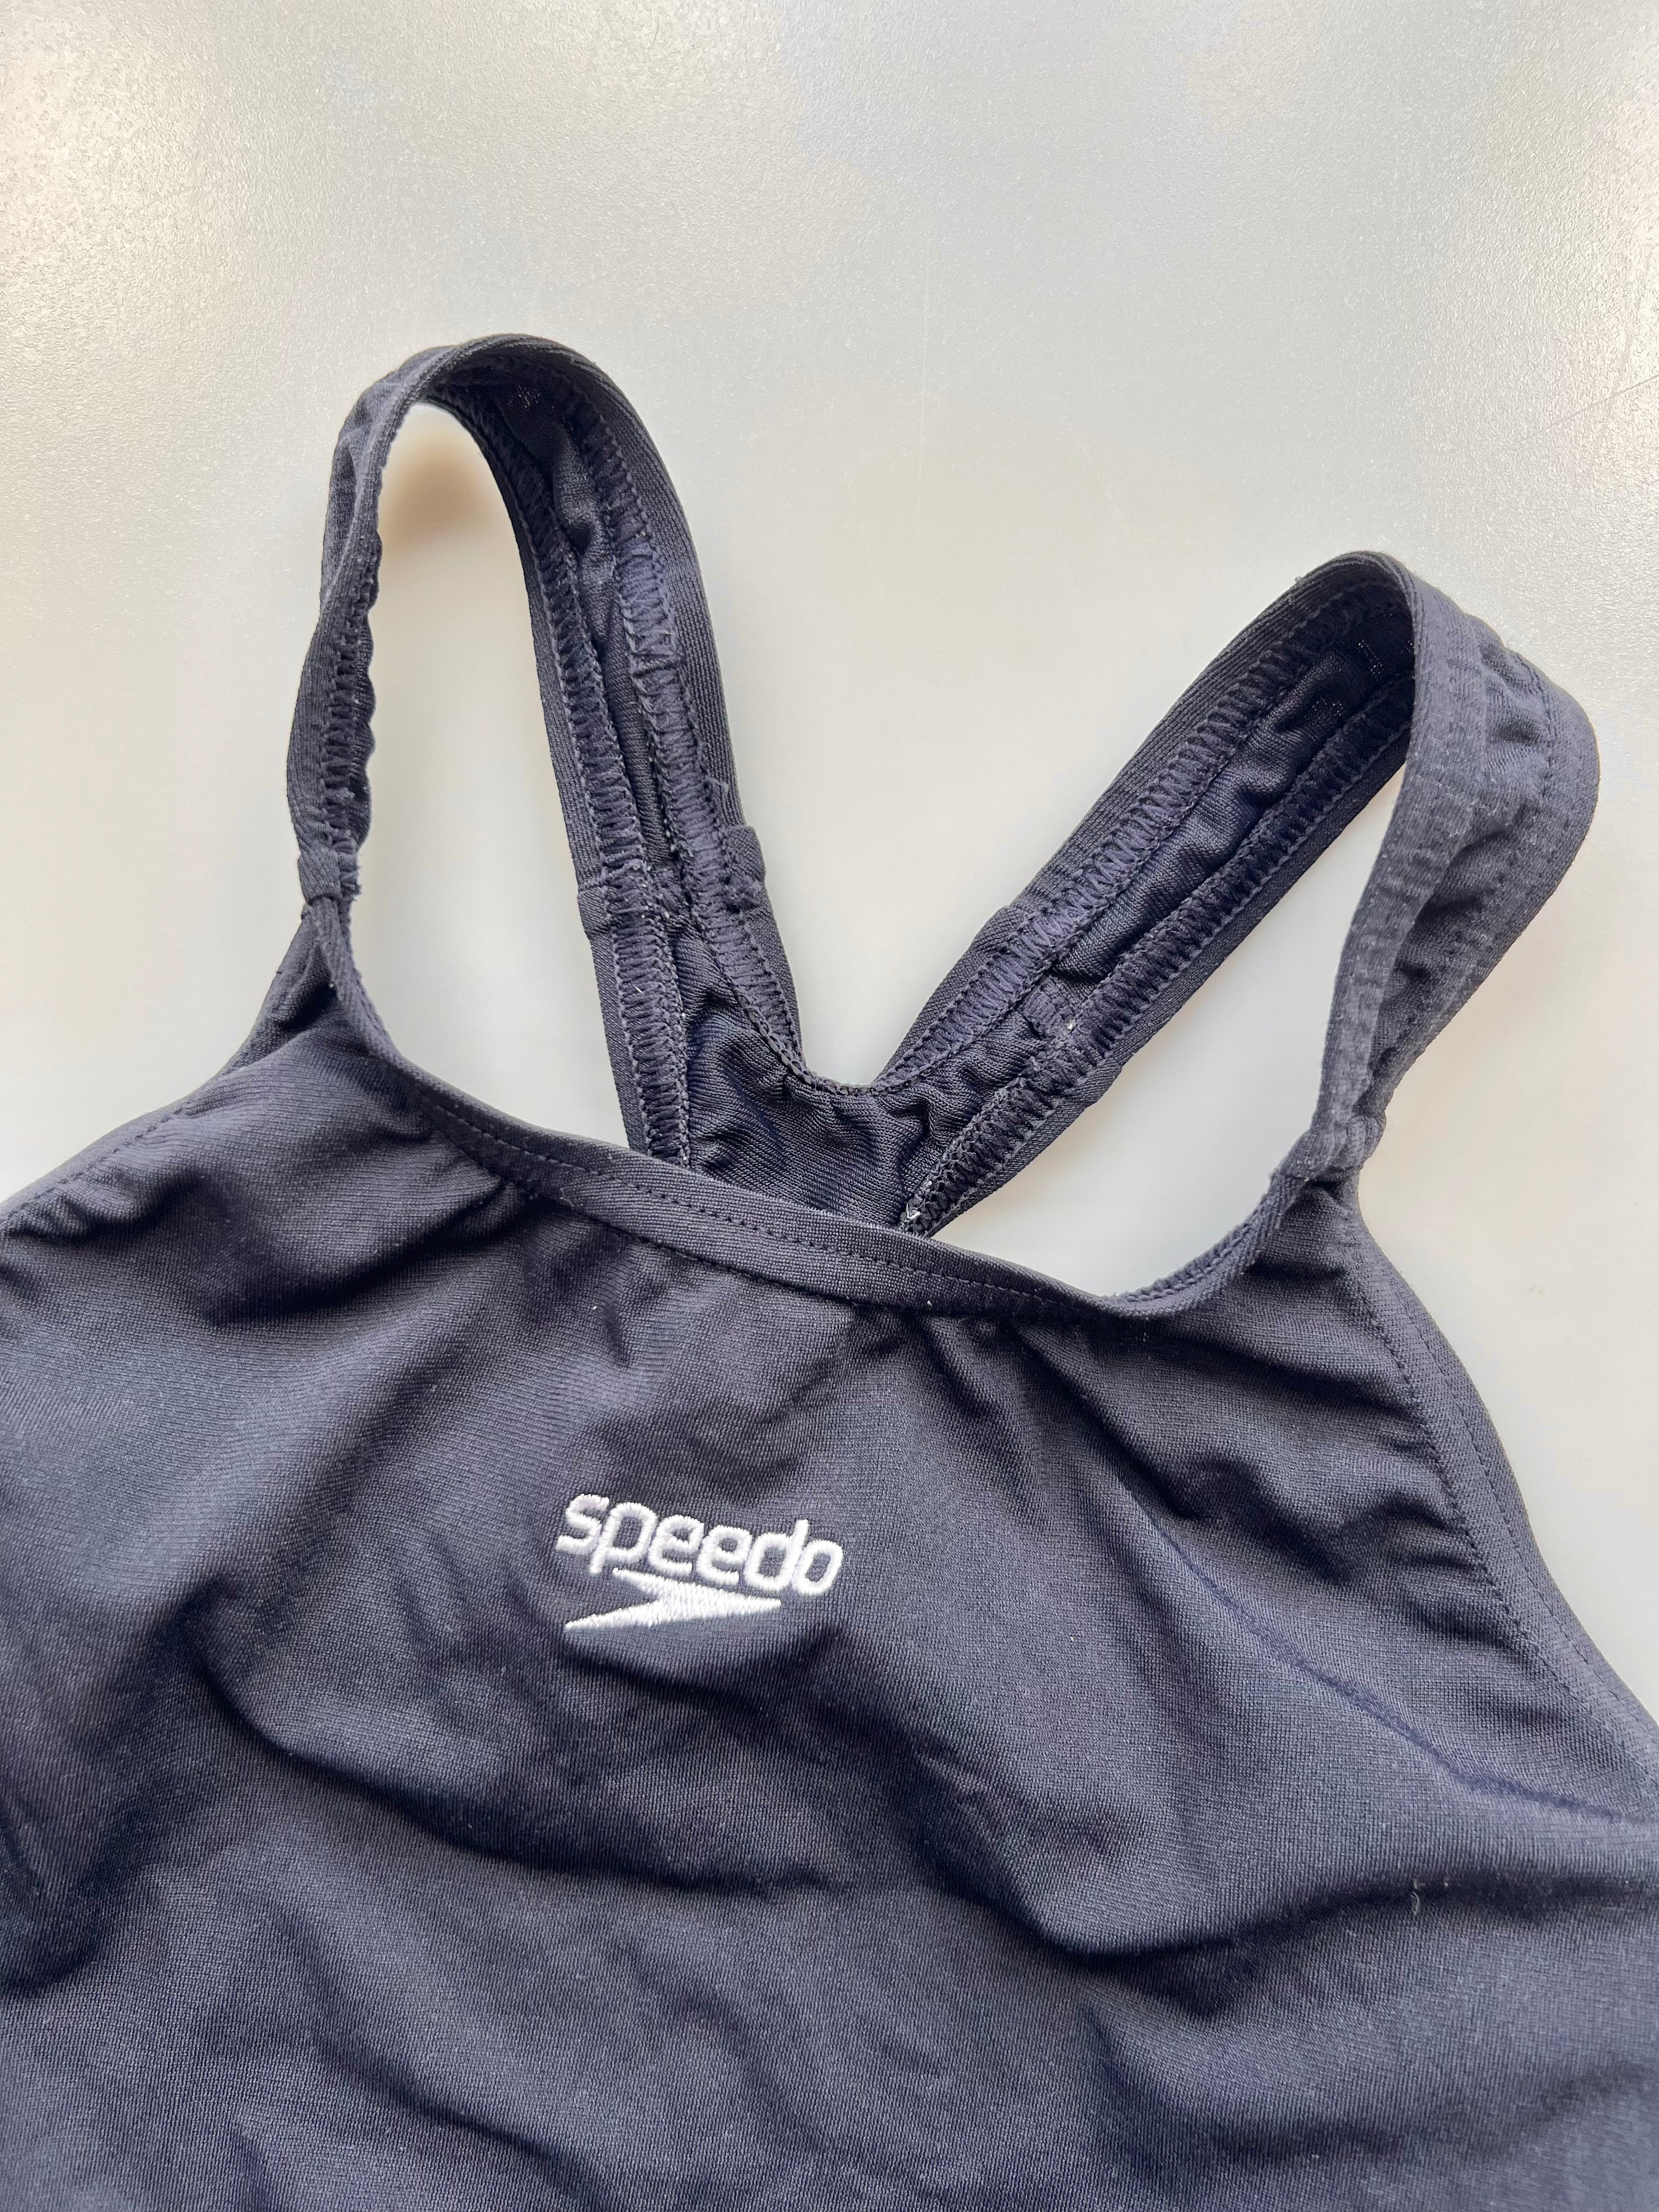 Speedo Black Swimsuit Age 6-8